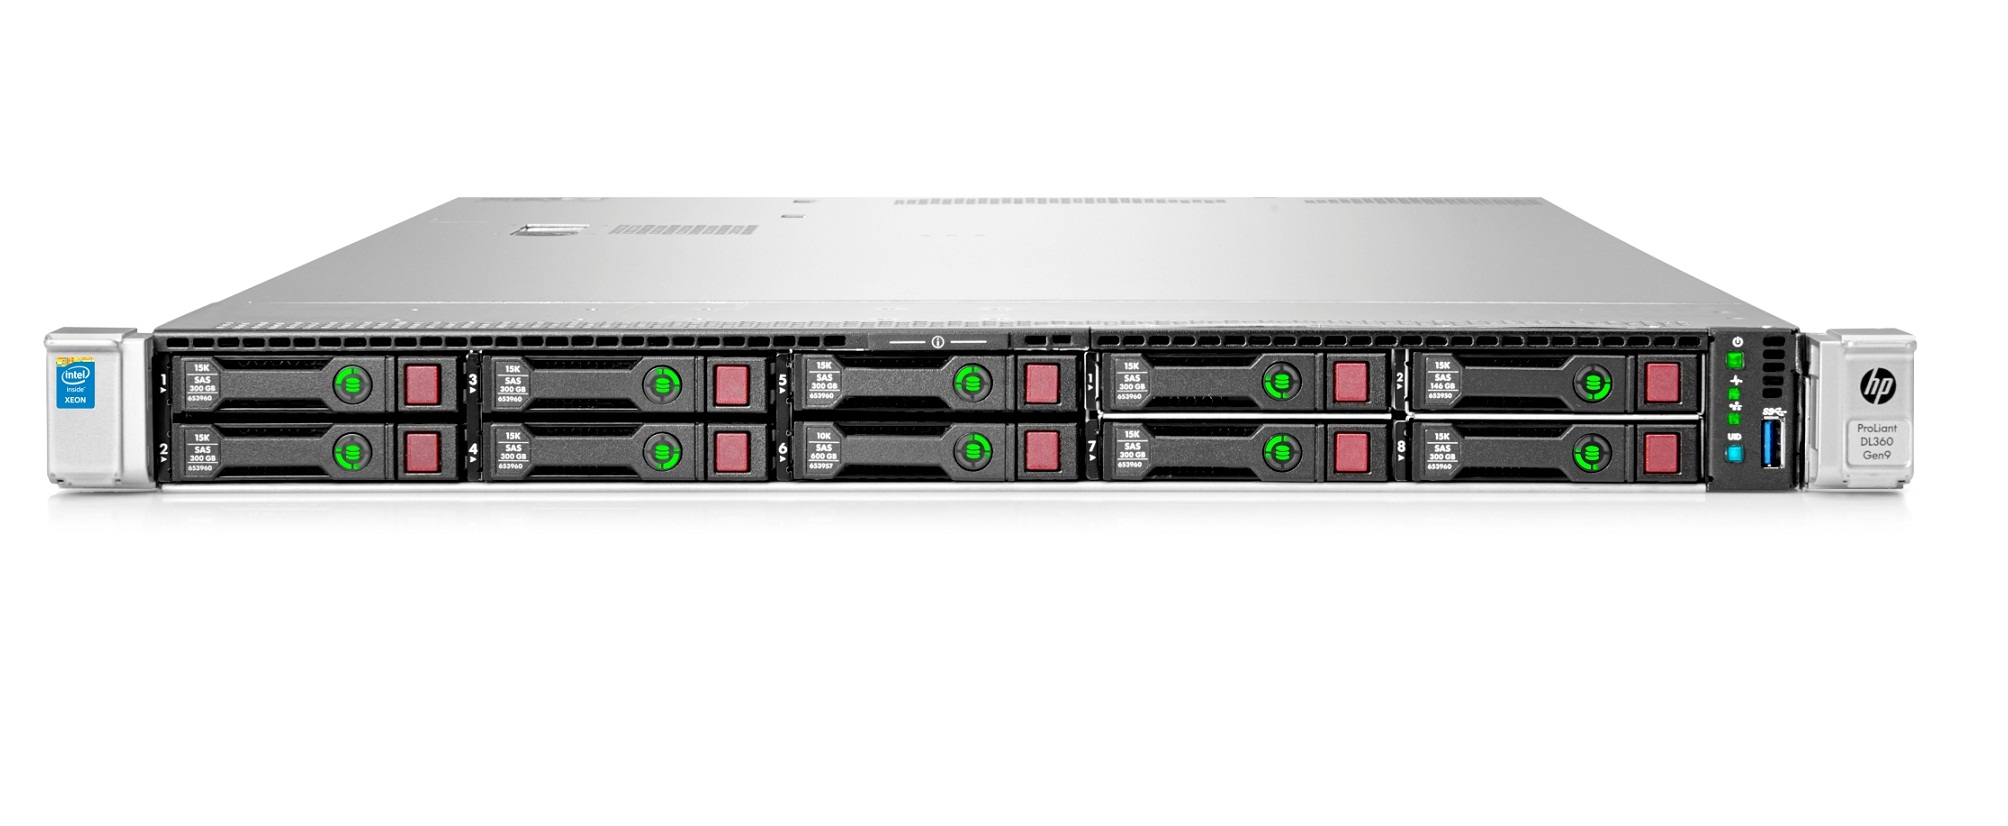 HPE 818207-B21 DL360 Gen9 E5-2603V4 1P 8G 8Sff Server